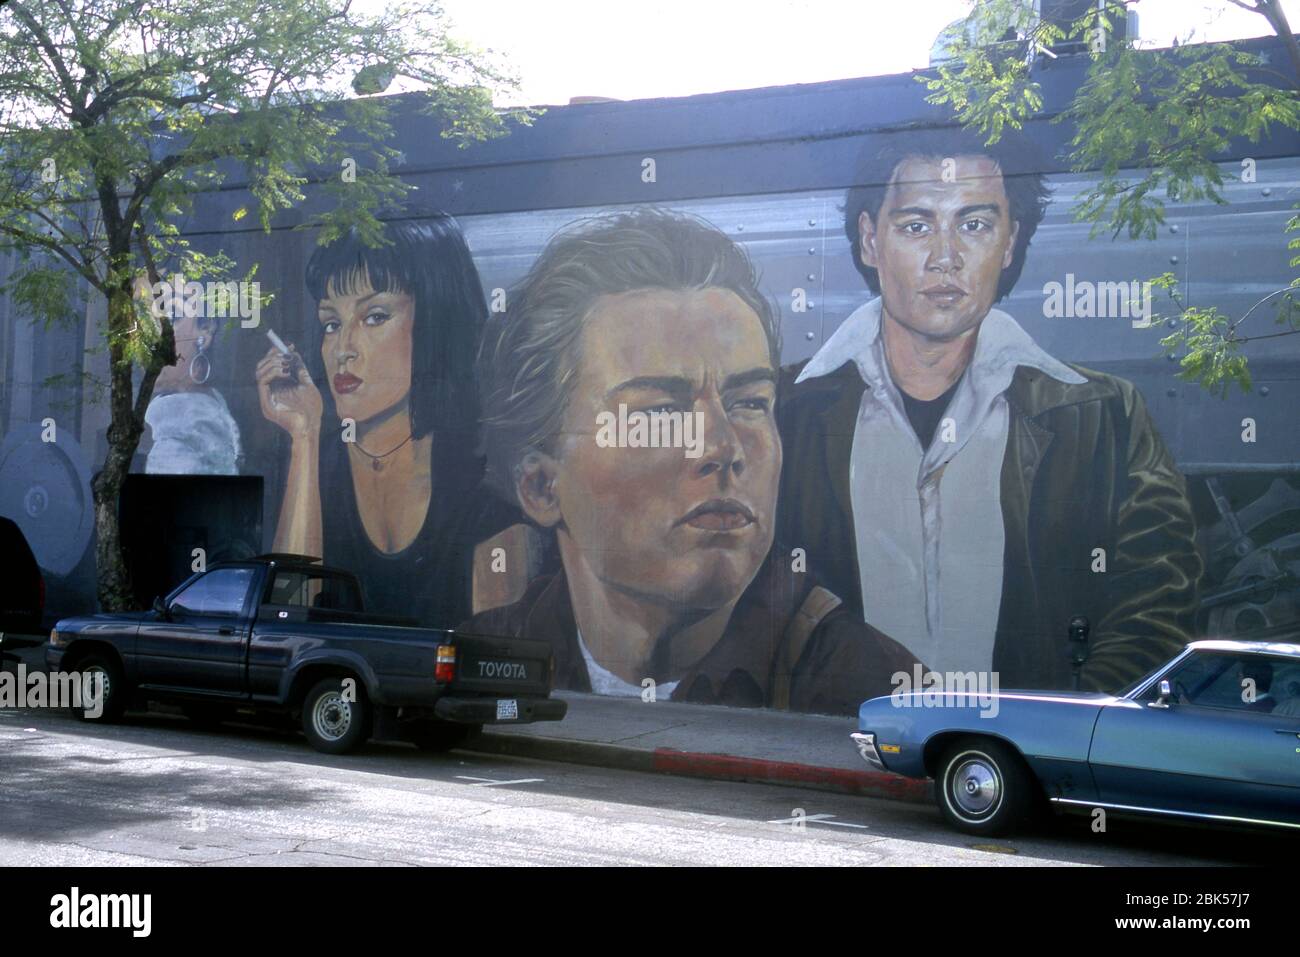 Fresque représentant de jeunes stars hollywoodiennes, dont Leonard DiCaprio et Uma Thurman dans le quartier de Los Feliz à Hollywood, Californie Banque D'Images